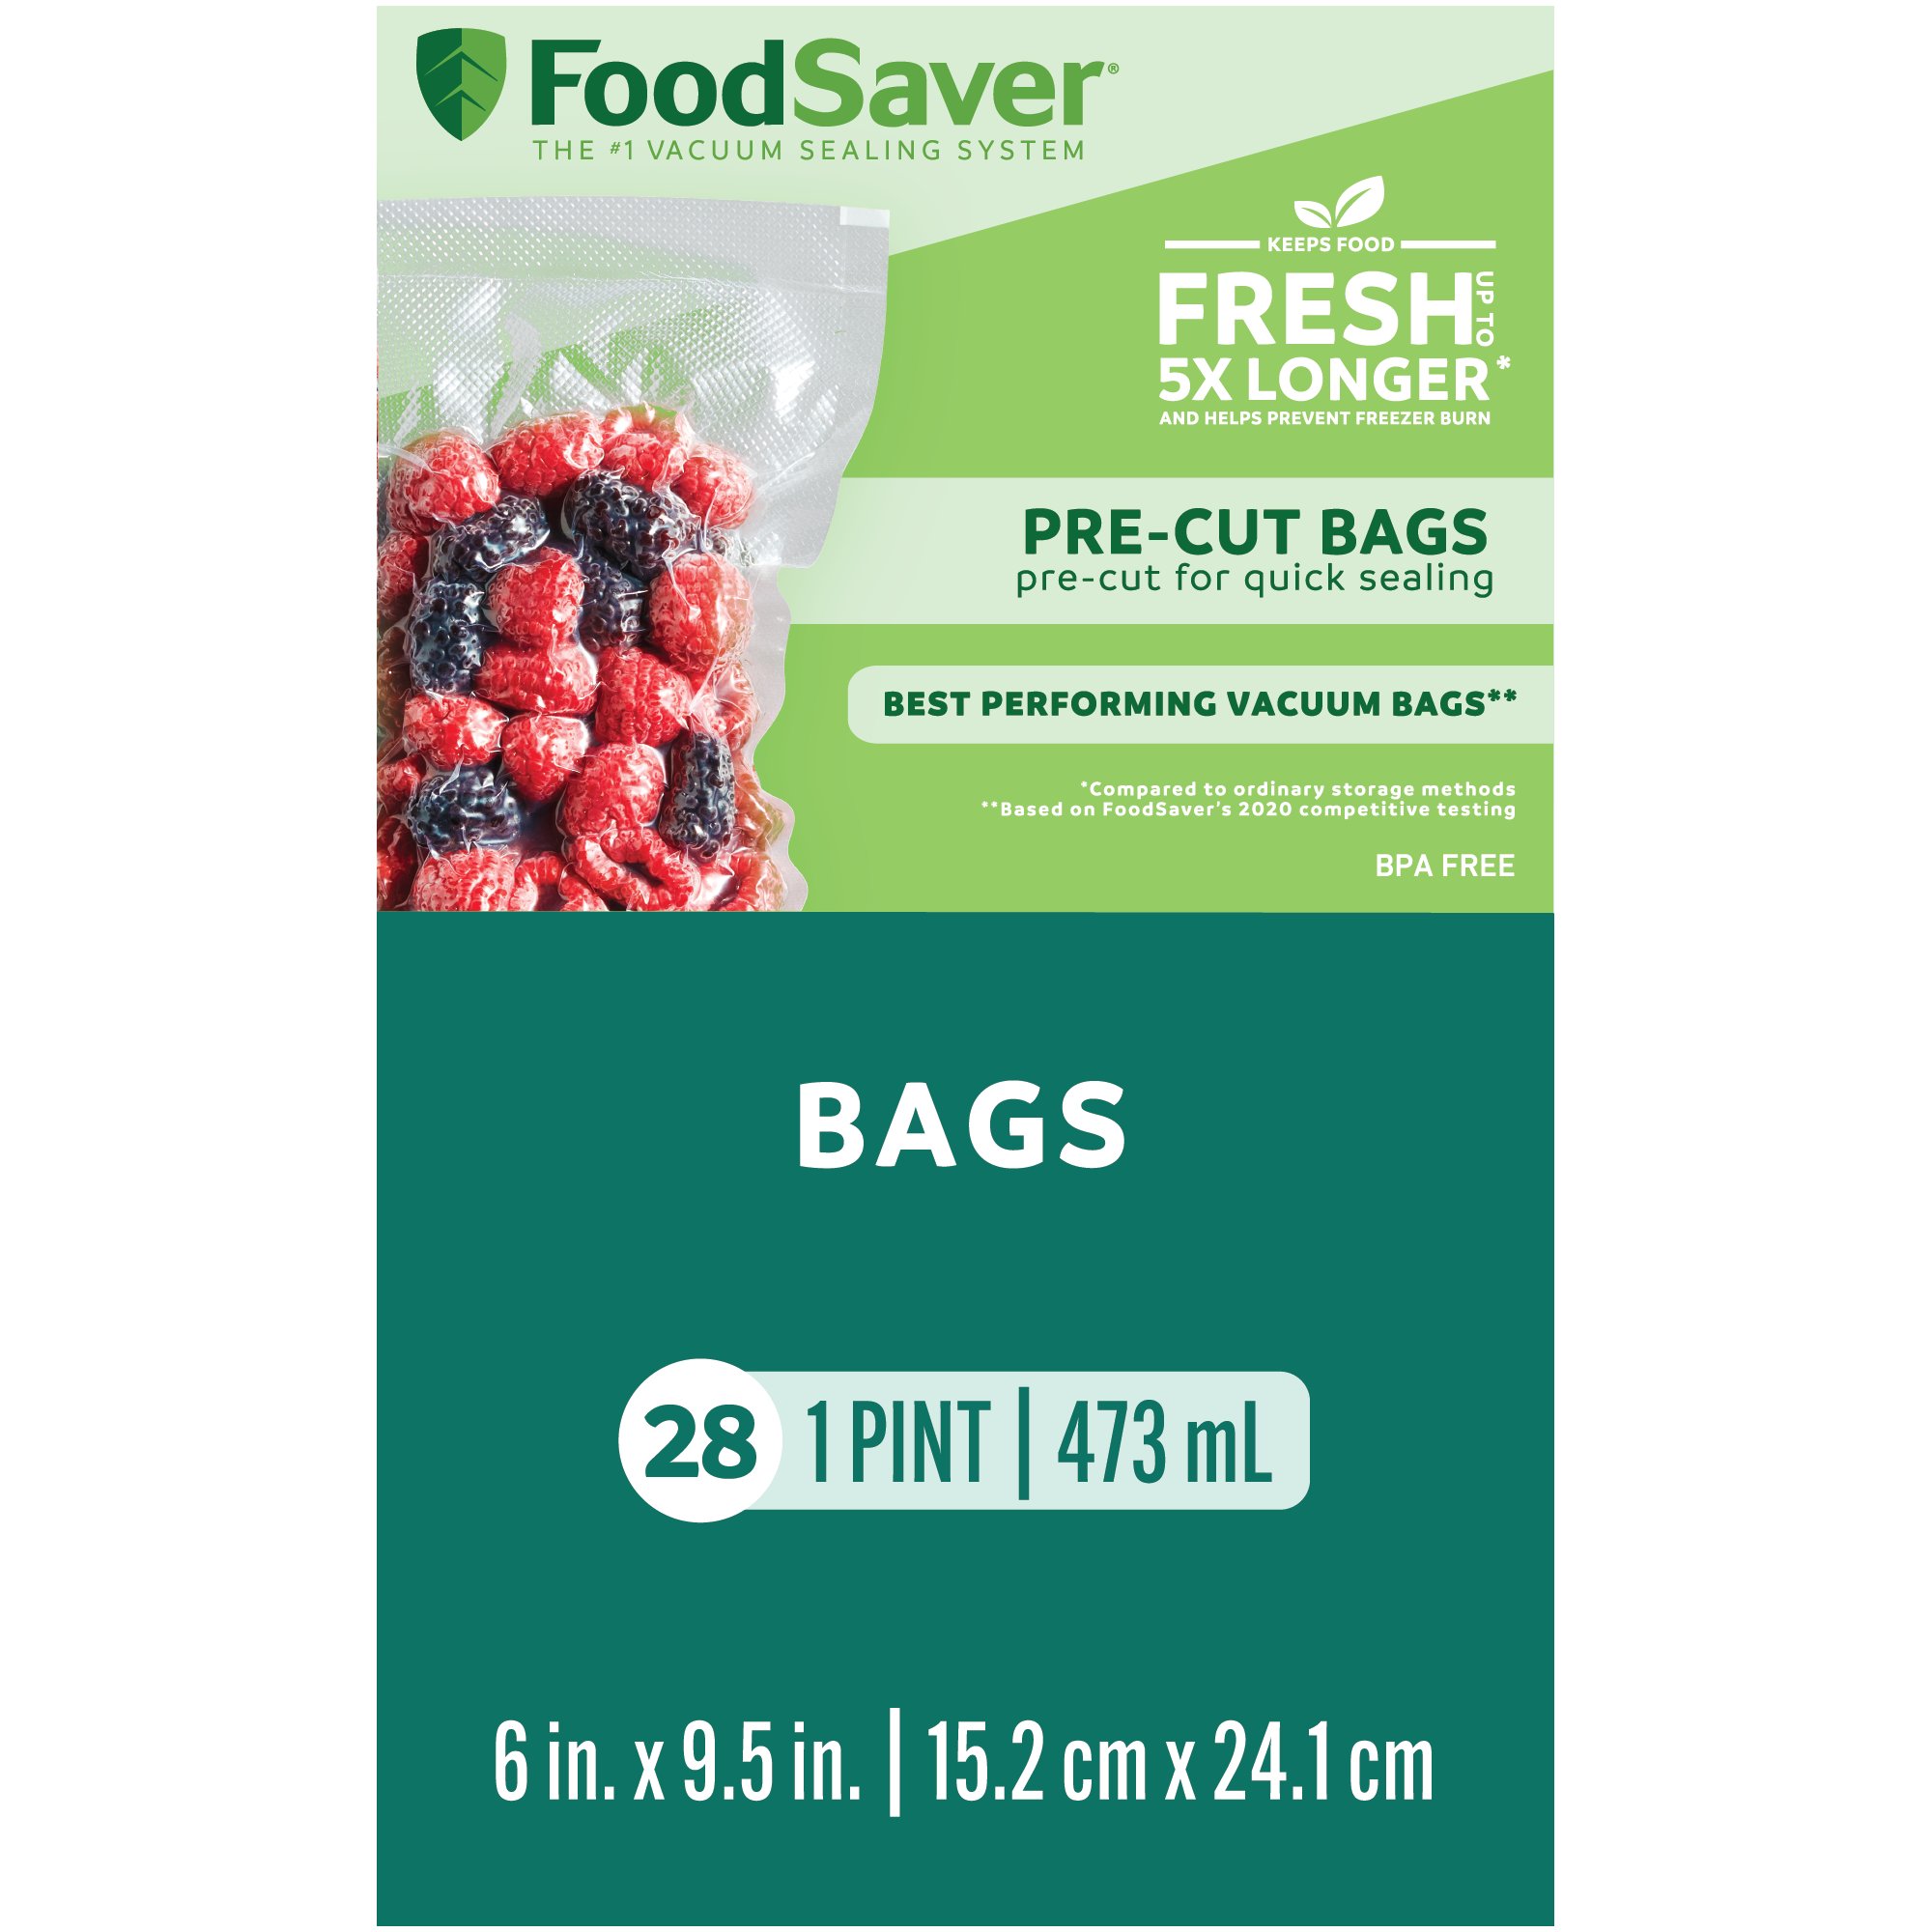 FoodSaver Vacuum-Seal Bags - 13 Gallon Size Bags